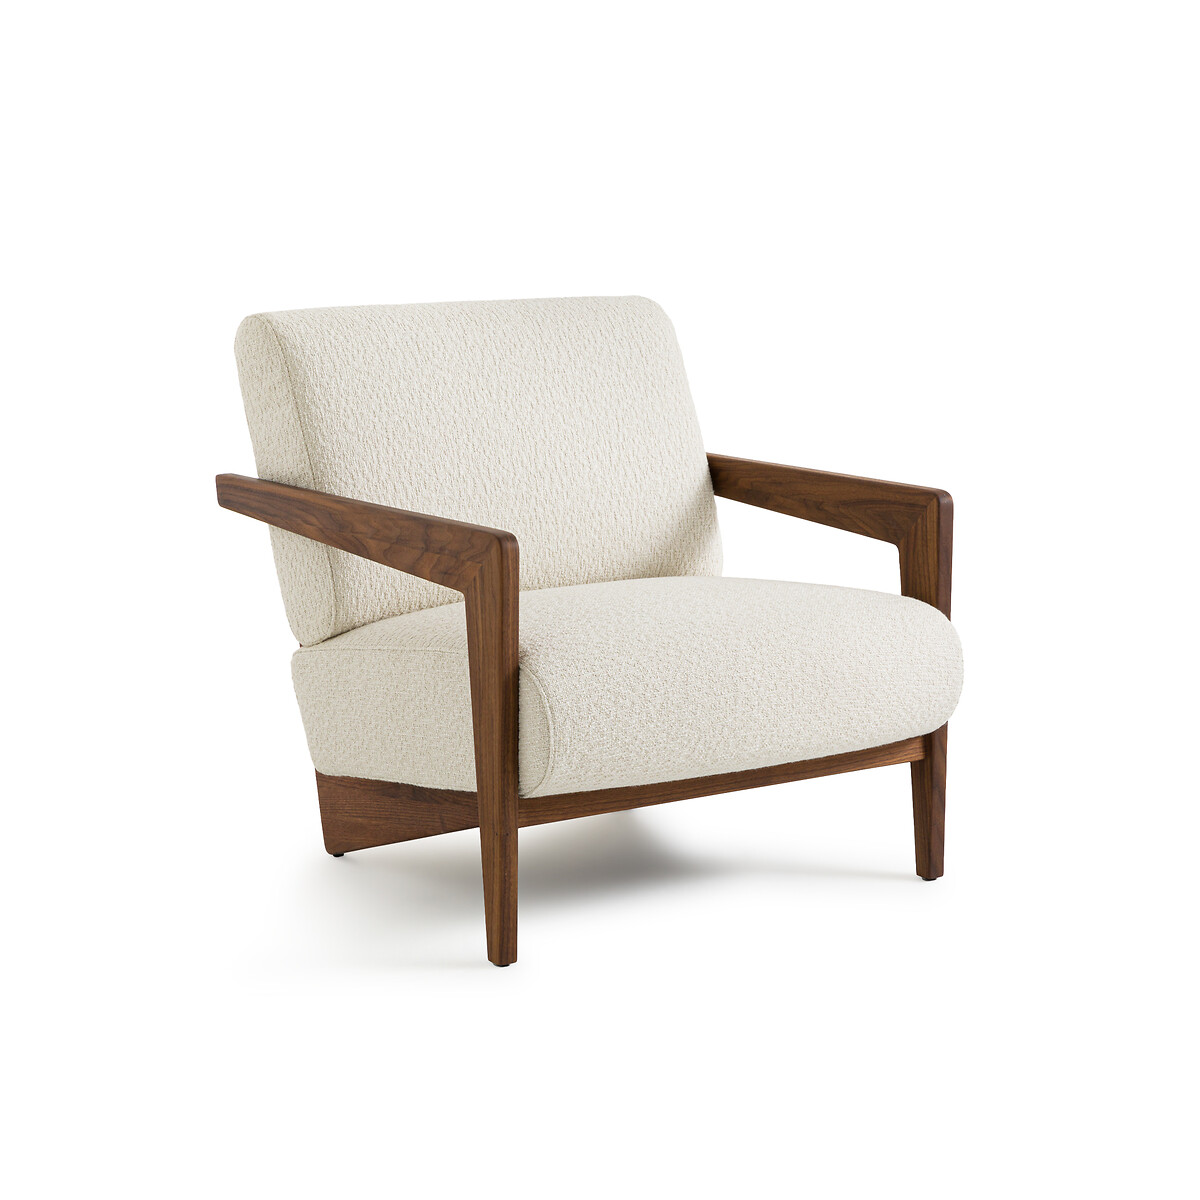 Кресло Из массива ореха и буклированной ткани Izag единый размер бежевый